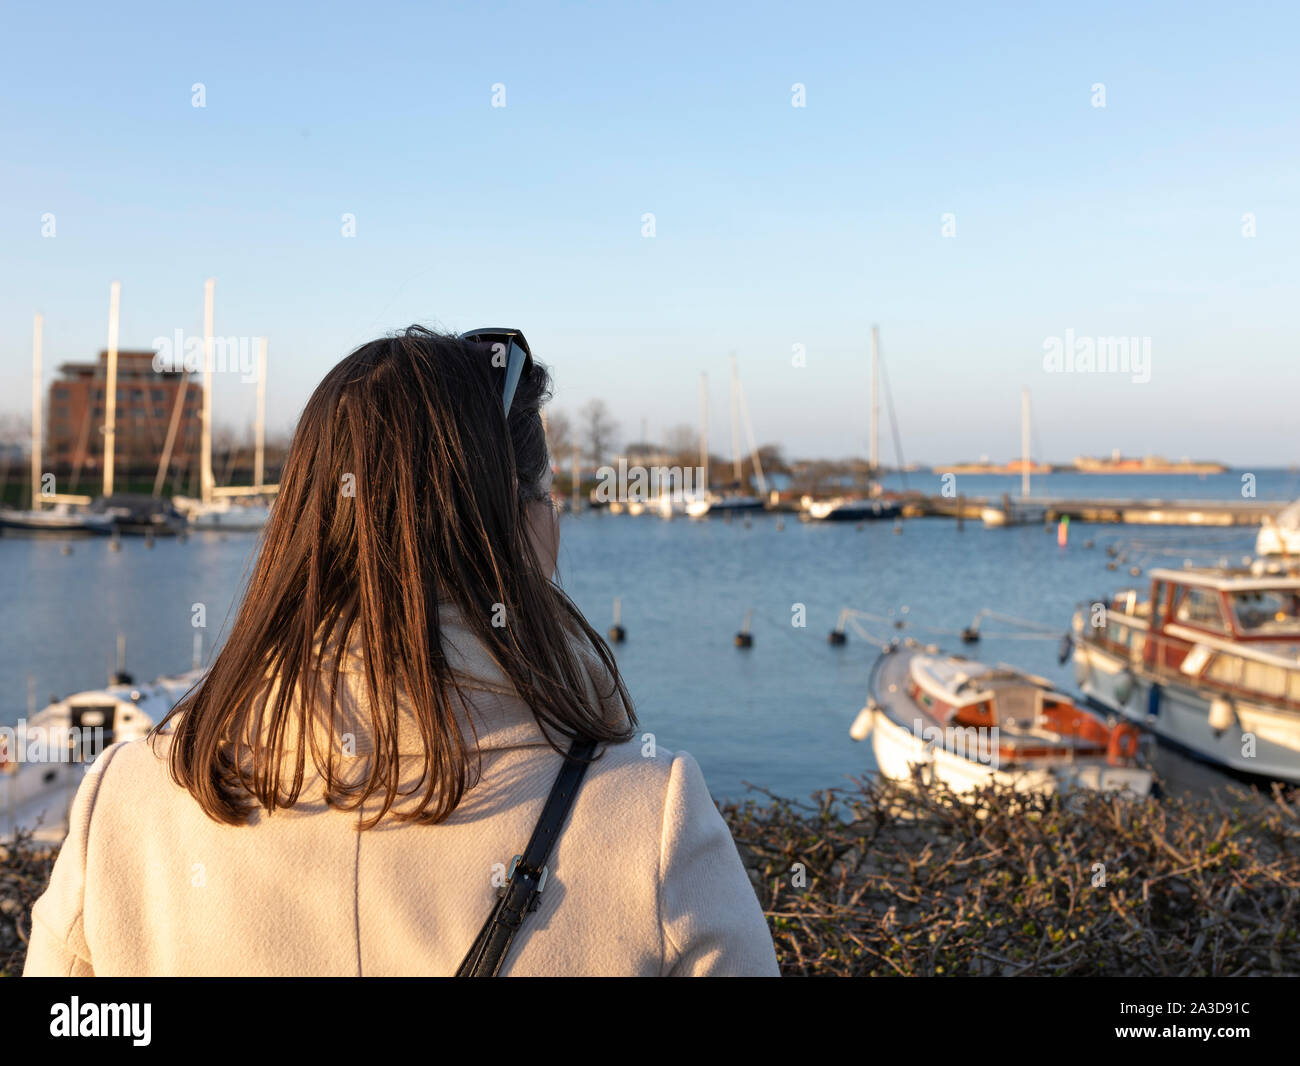 Schicke Frau schaut in einen Hafen mit Booten während eines Sonnenuntergangs Foto Stock